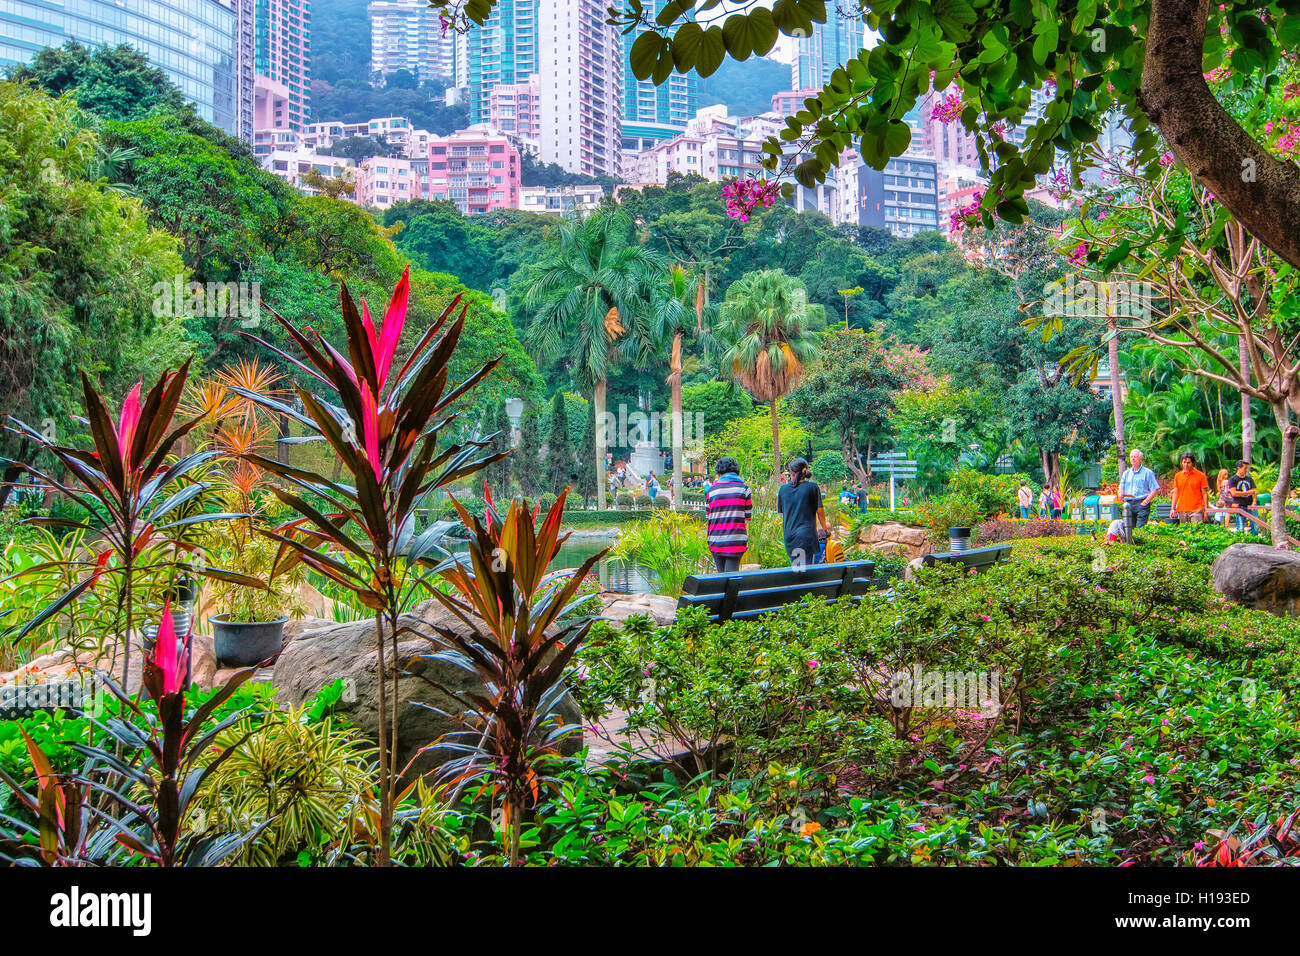 Hong Kong park Stock Photo